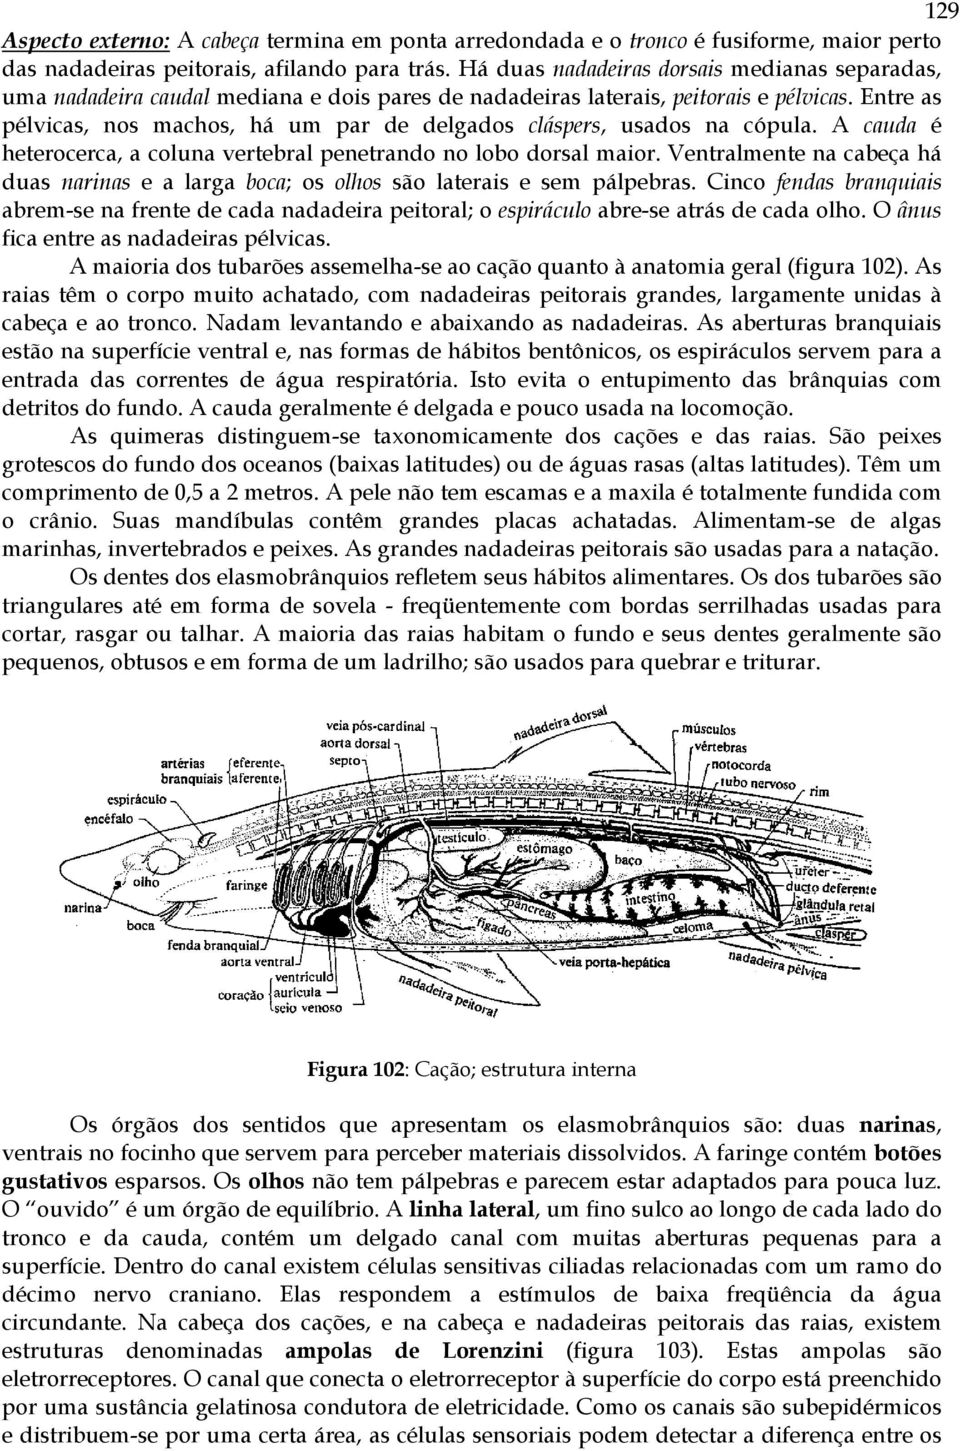 Entre as pélvicas, nos machos, há um par de delgados cláspers, usados na cópula. A cauda é heterocerca, a coluna vertebral penetrando no lobo dorsal maior.